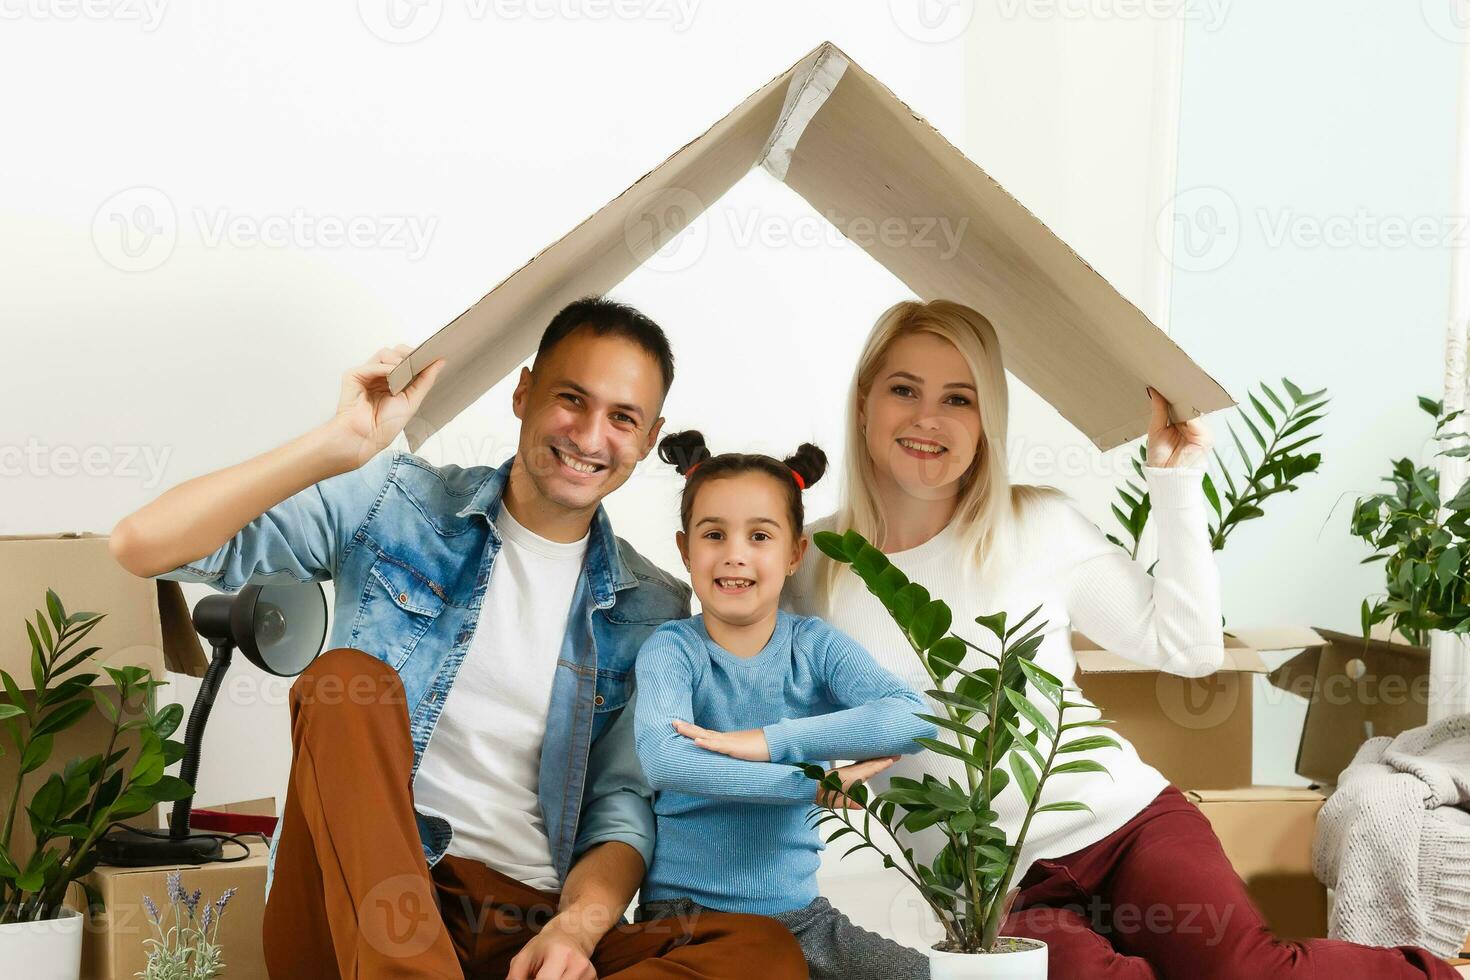 familia desempacar cartulina cajas a nuevo hogar foto